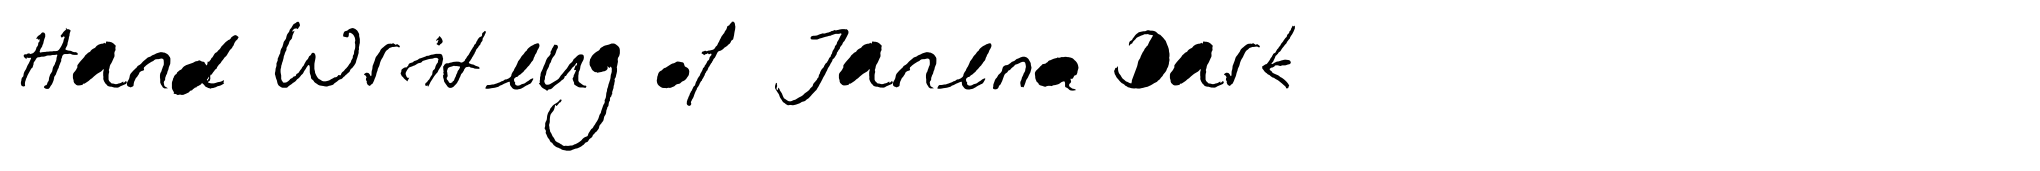 Hand Writing of Janina Dark image